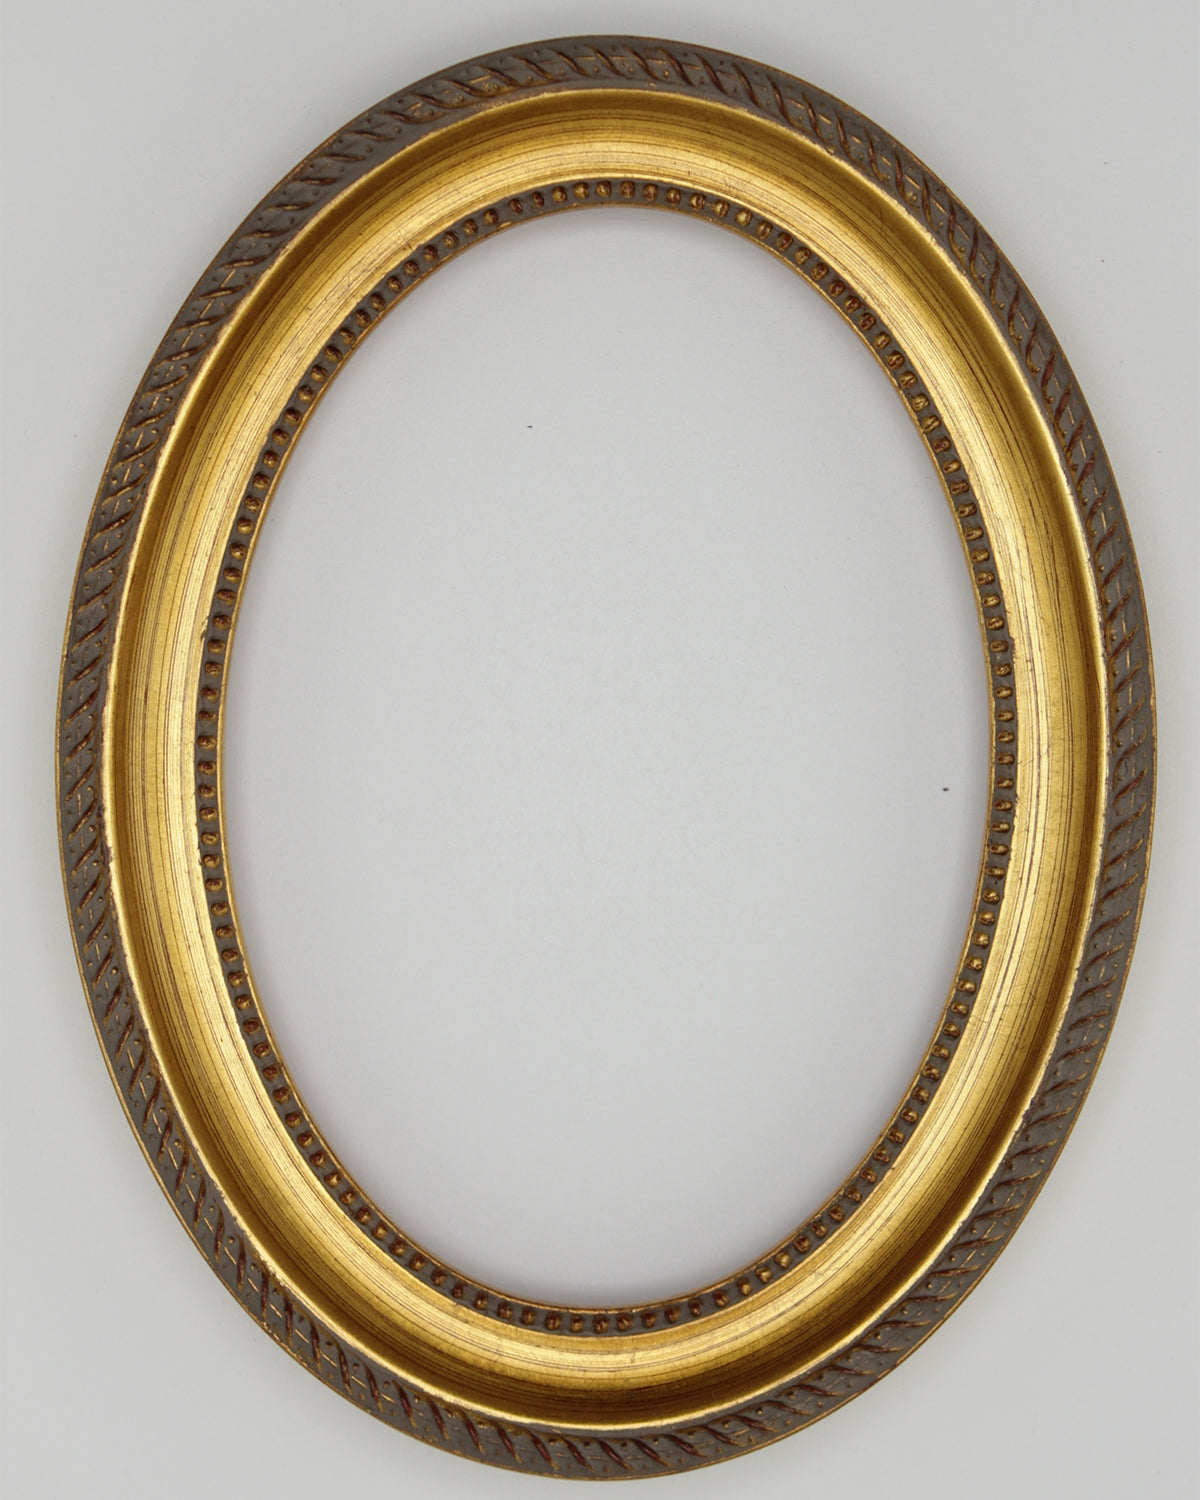 Presto 700 Gold Solid Wood Oval Frames Frames For Portraits